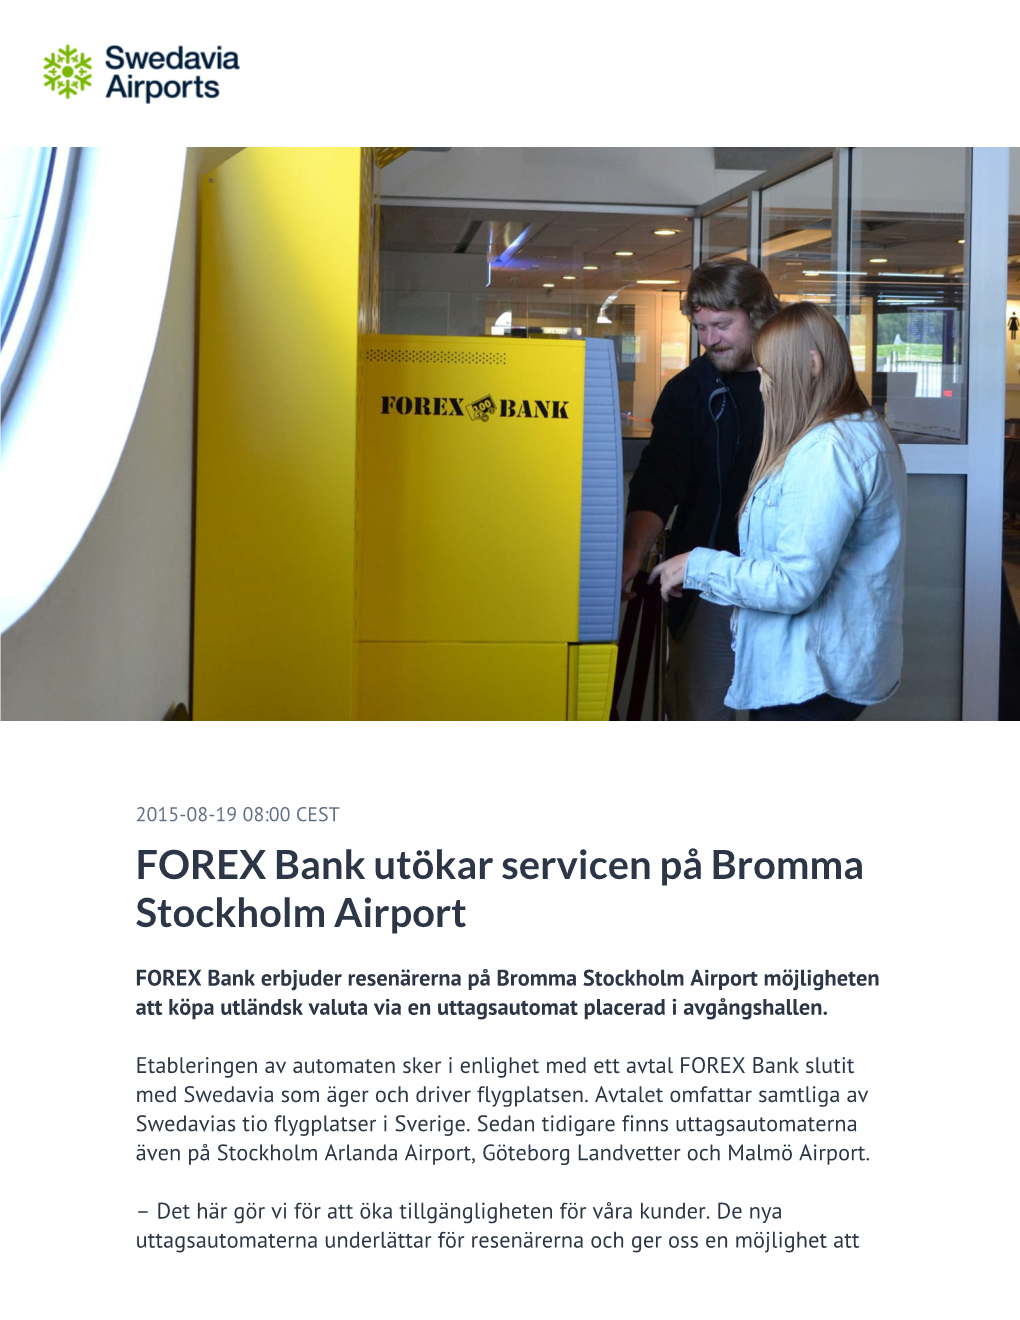 FOREX Bank Utökar Servicen På Bromma Stockholm Airport